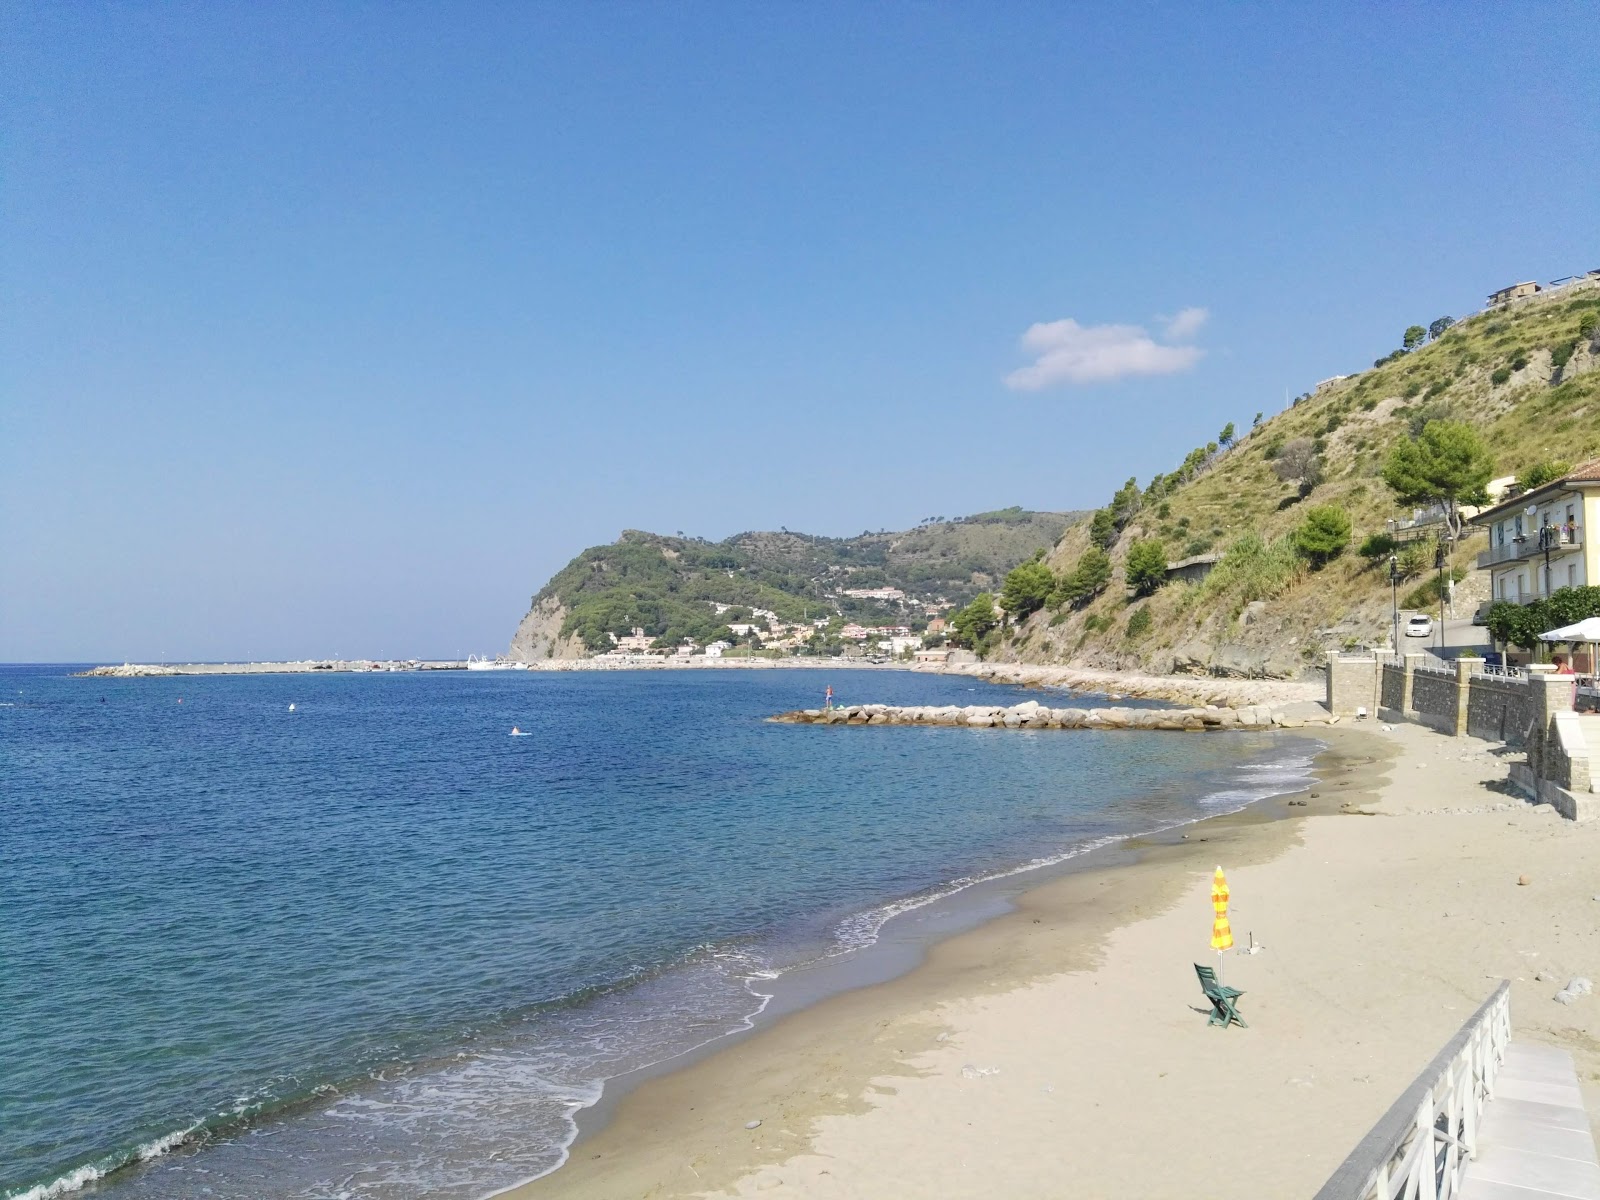 Marigliano beach'in fotoğrafı kahverengi kum yüzey ile